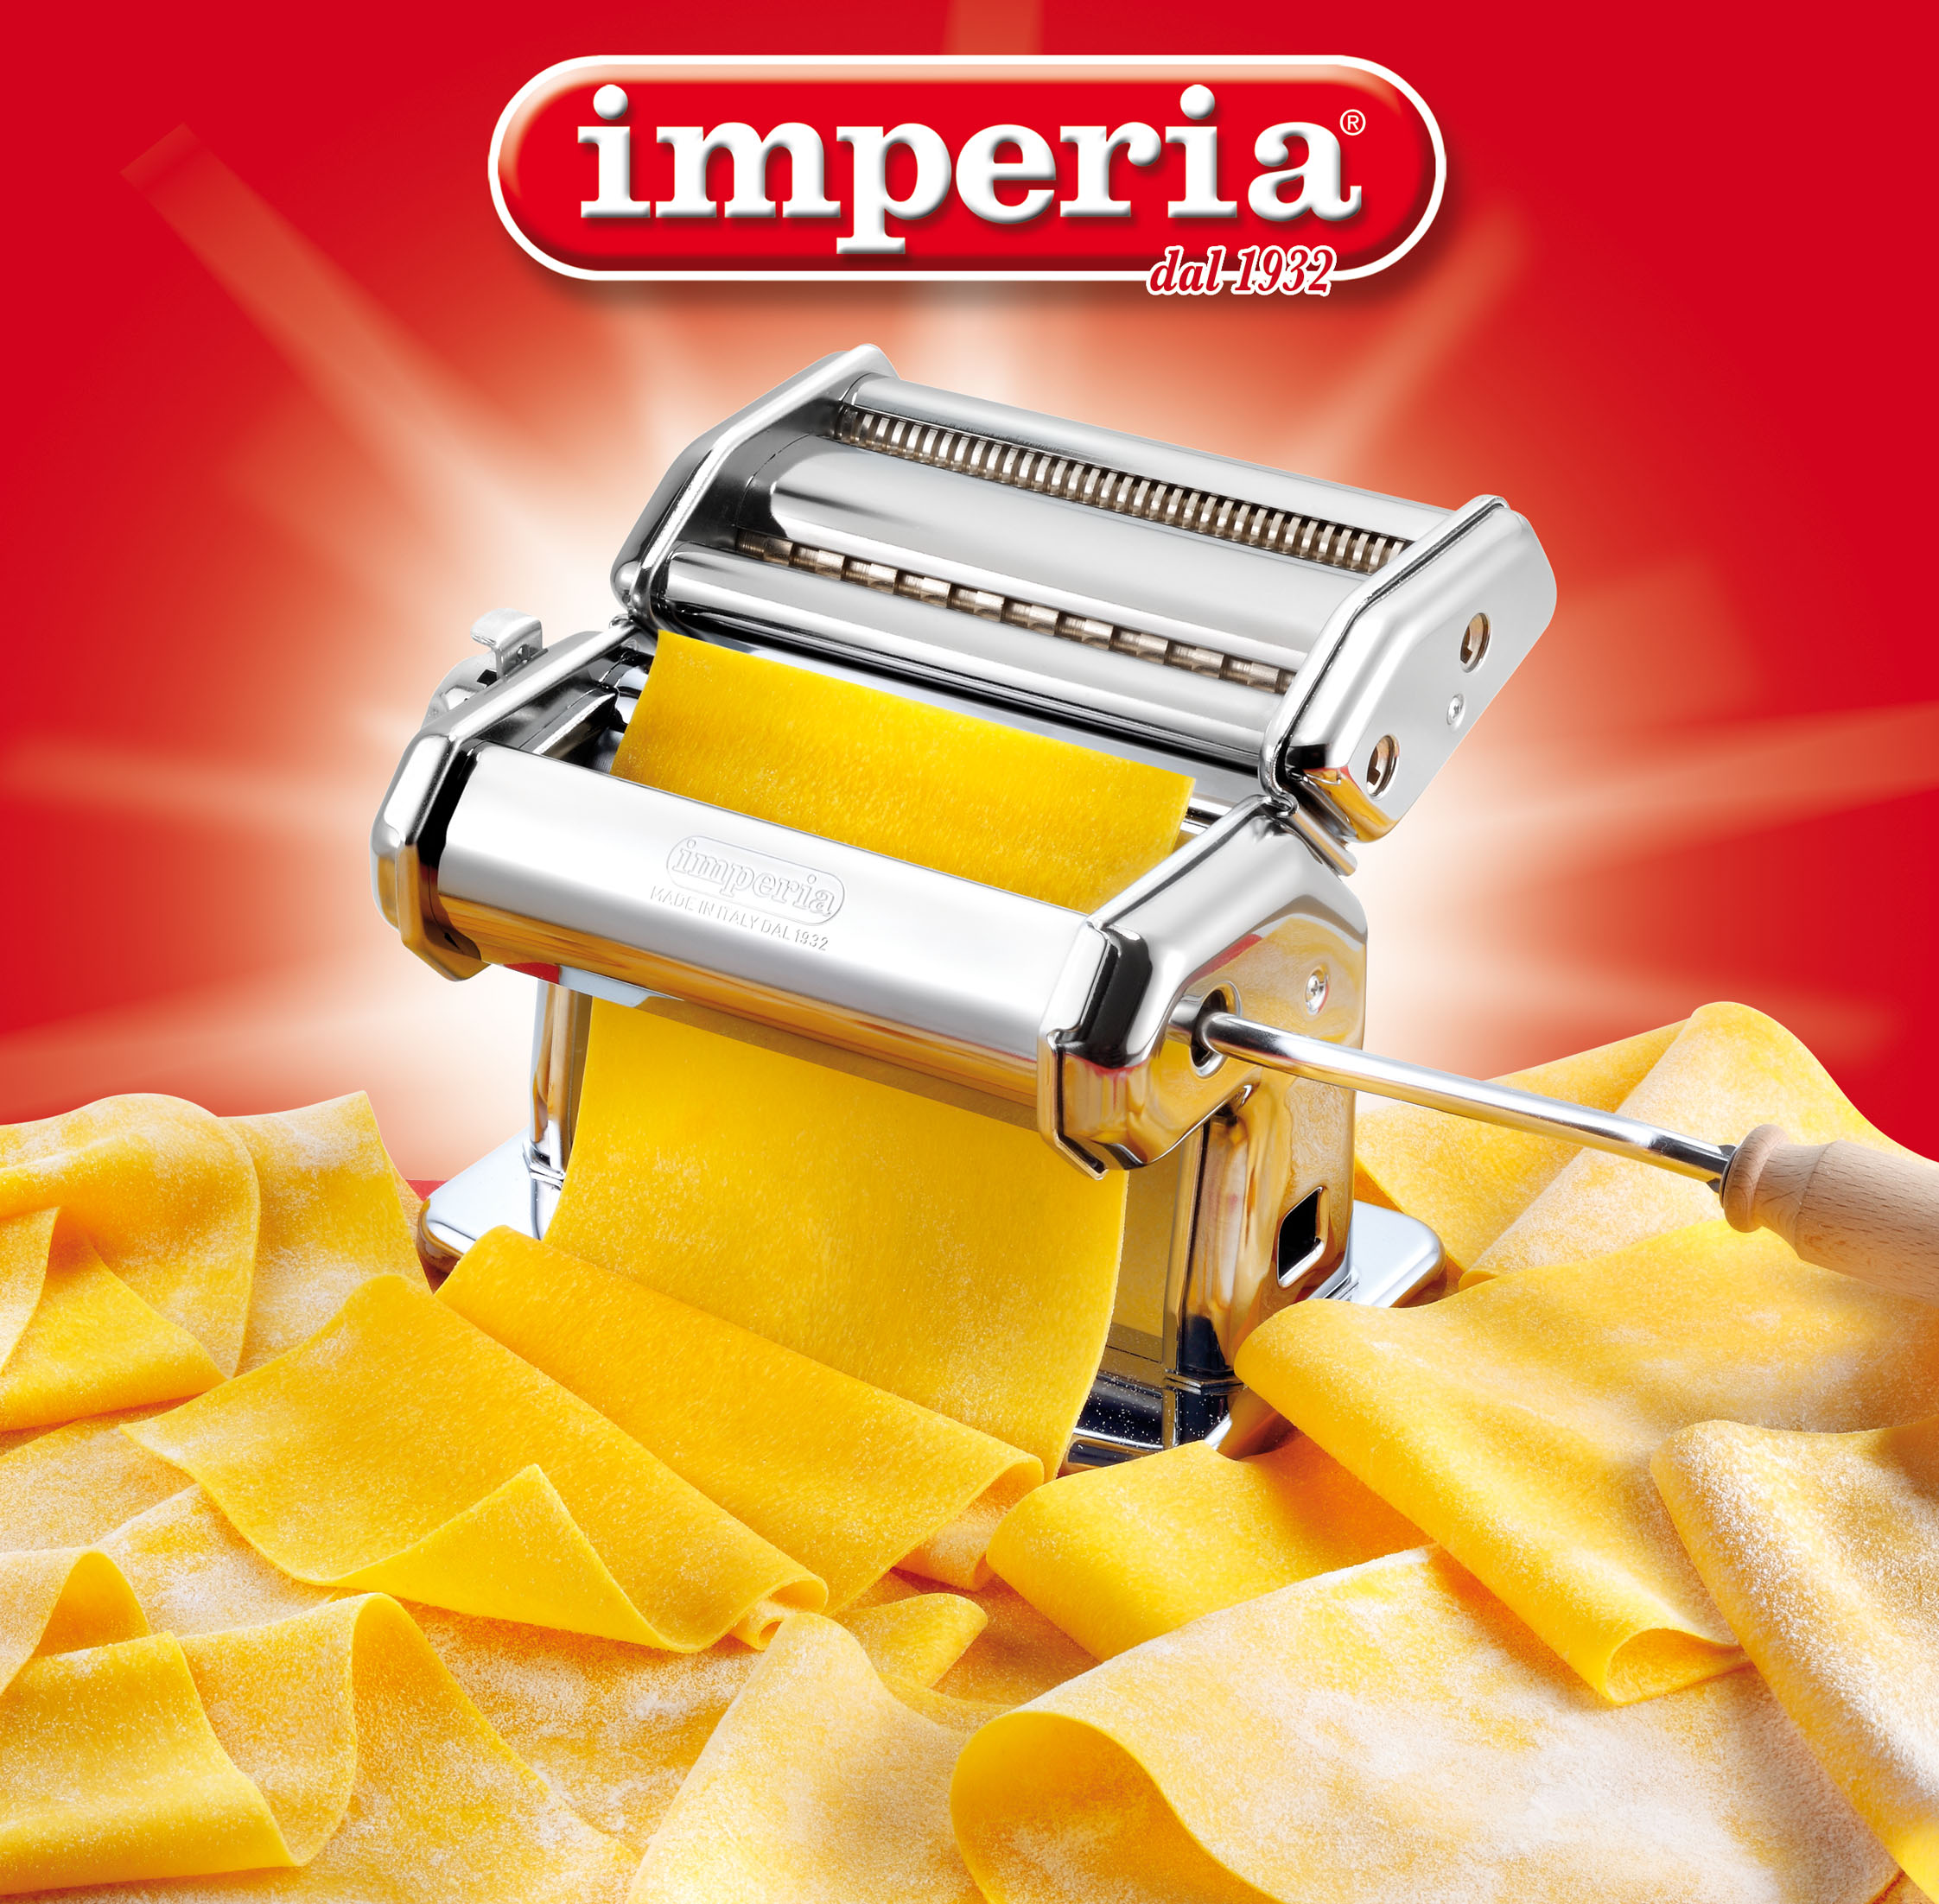 Imperia Pasta Machine SP150 Product Image 1